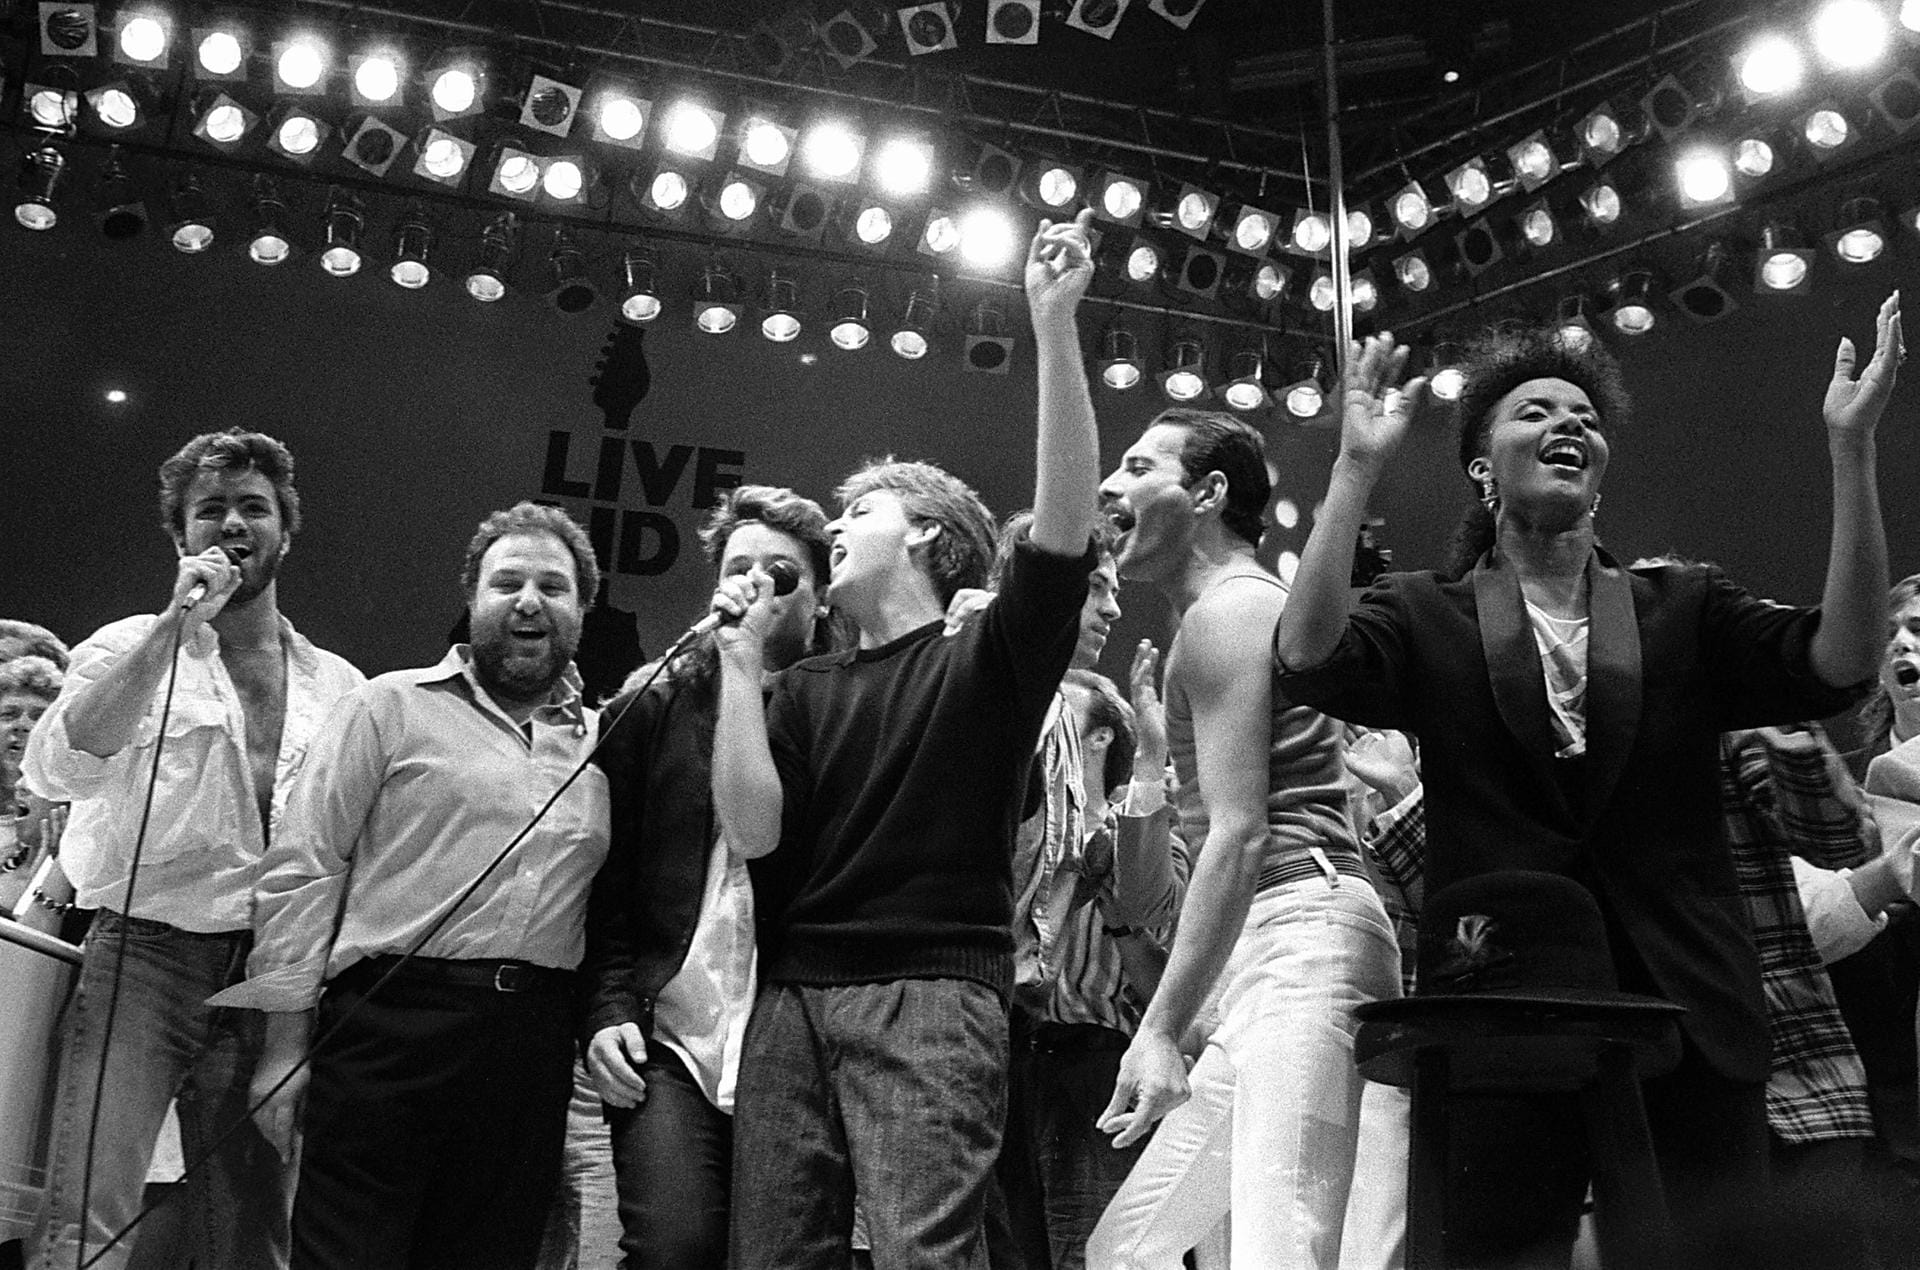 George Michael (links) gemeinsam mit seinen Musikerkollegen Bono von U2, Paul McCartney, Bob Geldof und Freddy Mercury von Queen beim Live Aid Konzert 1985 im Wembley-Stadion.